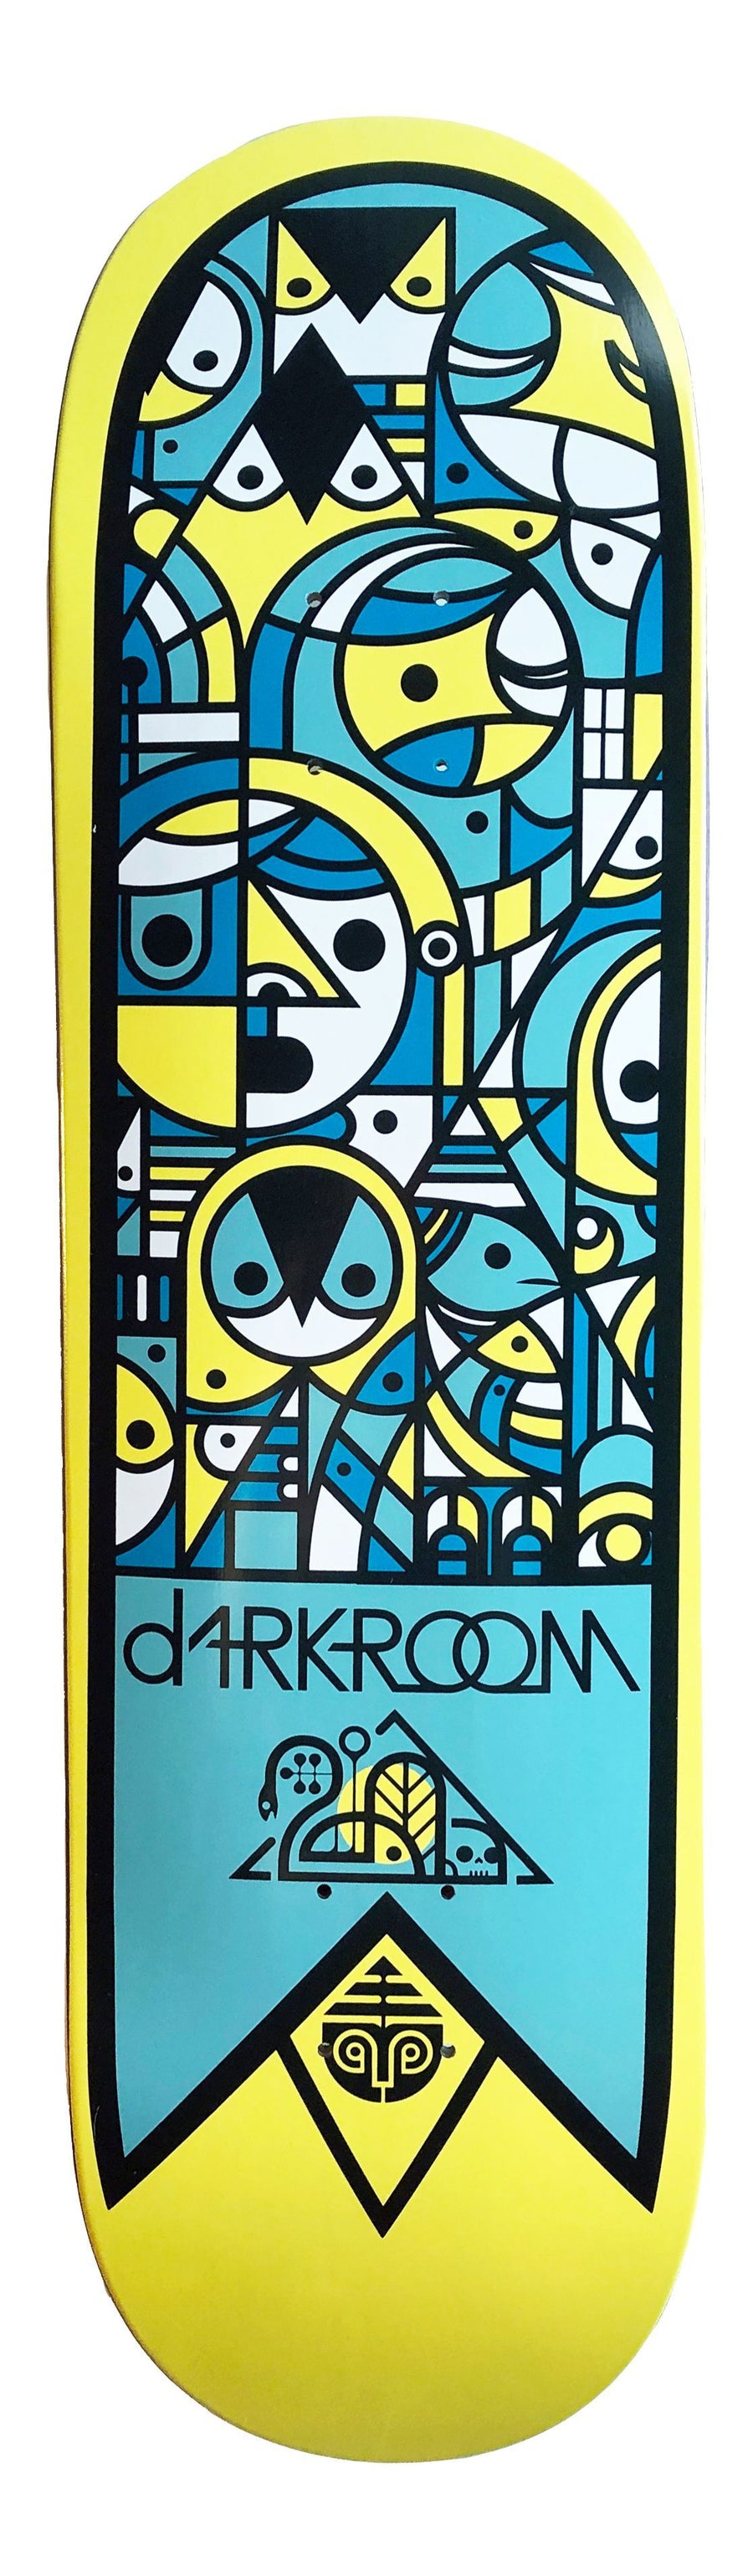 DARKROOM CEREMONY DECK (8.625